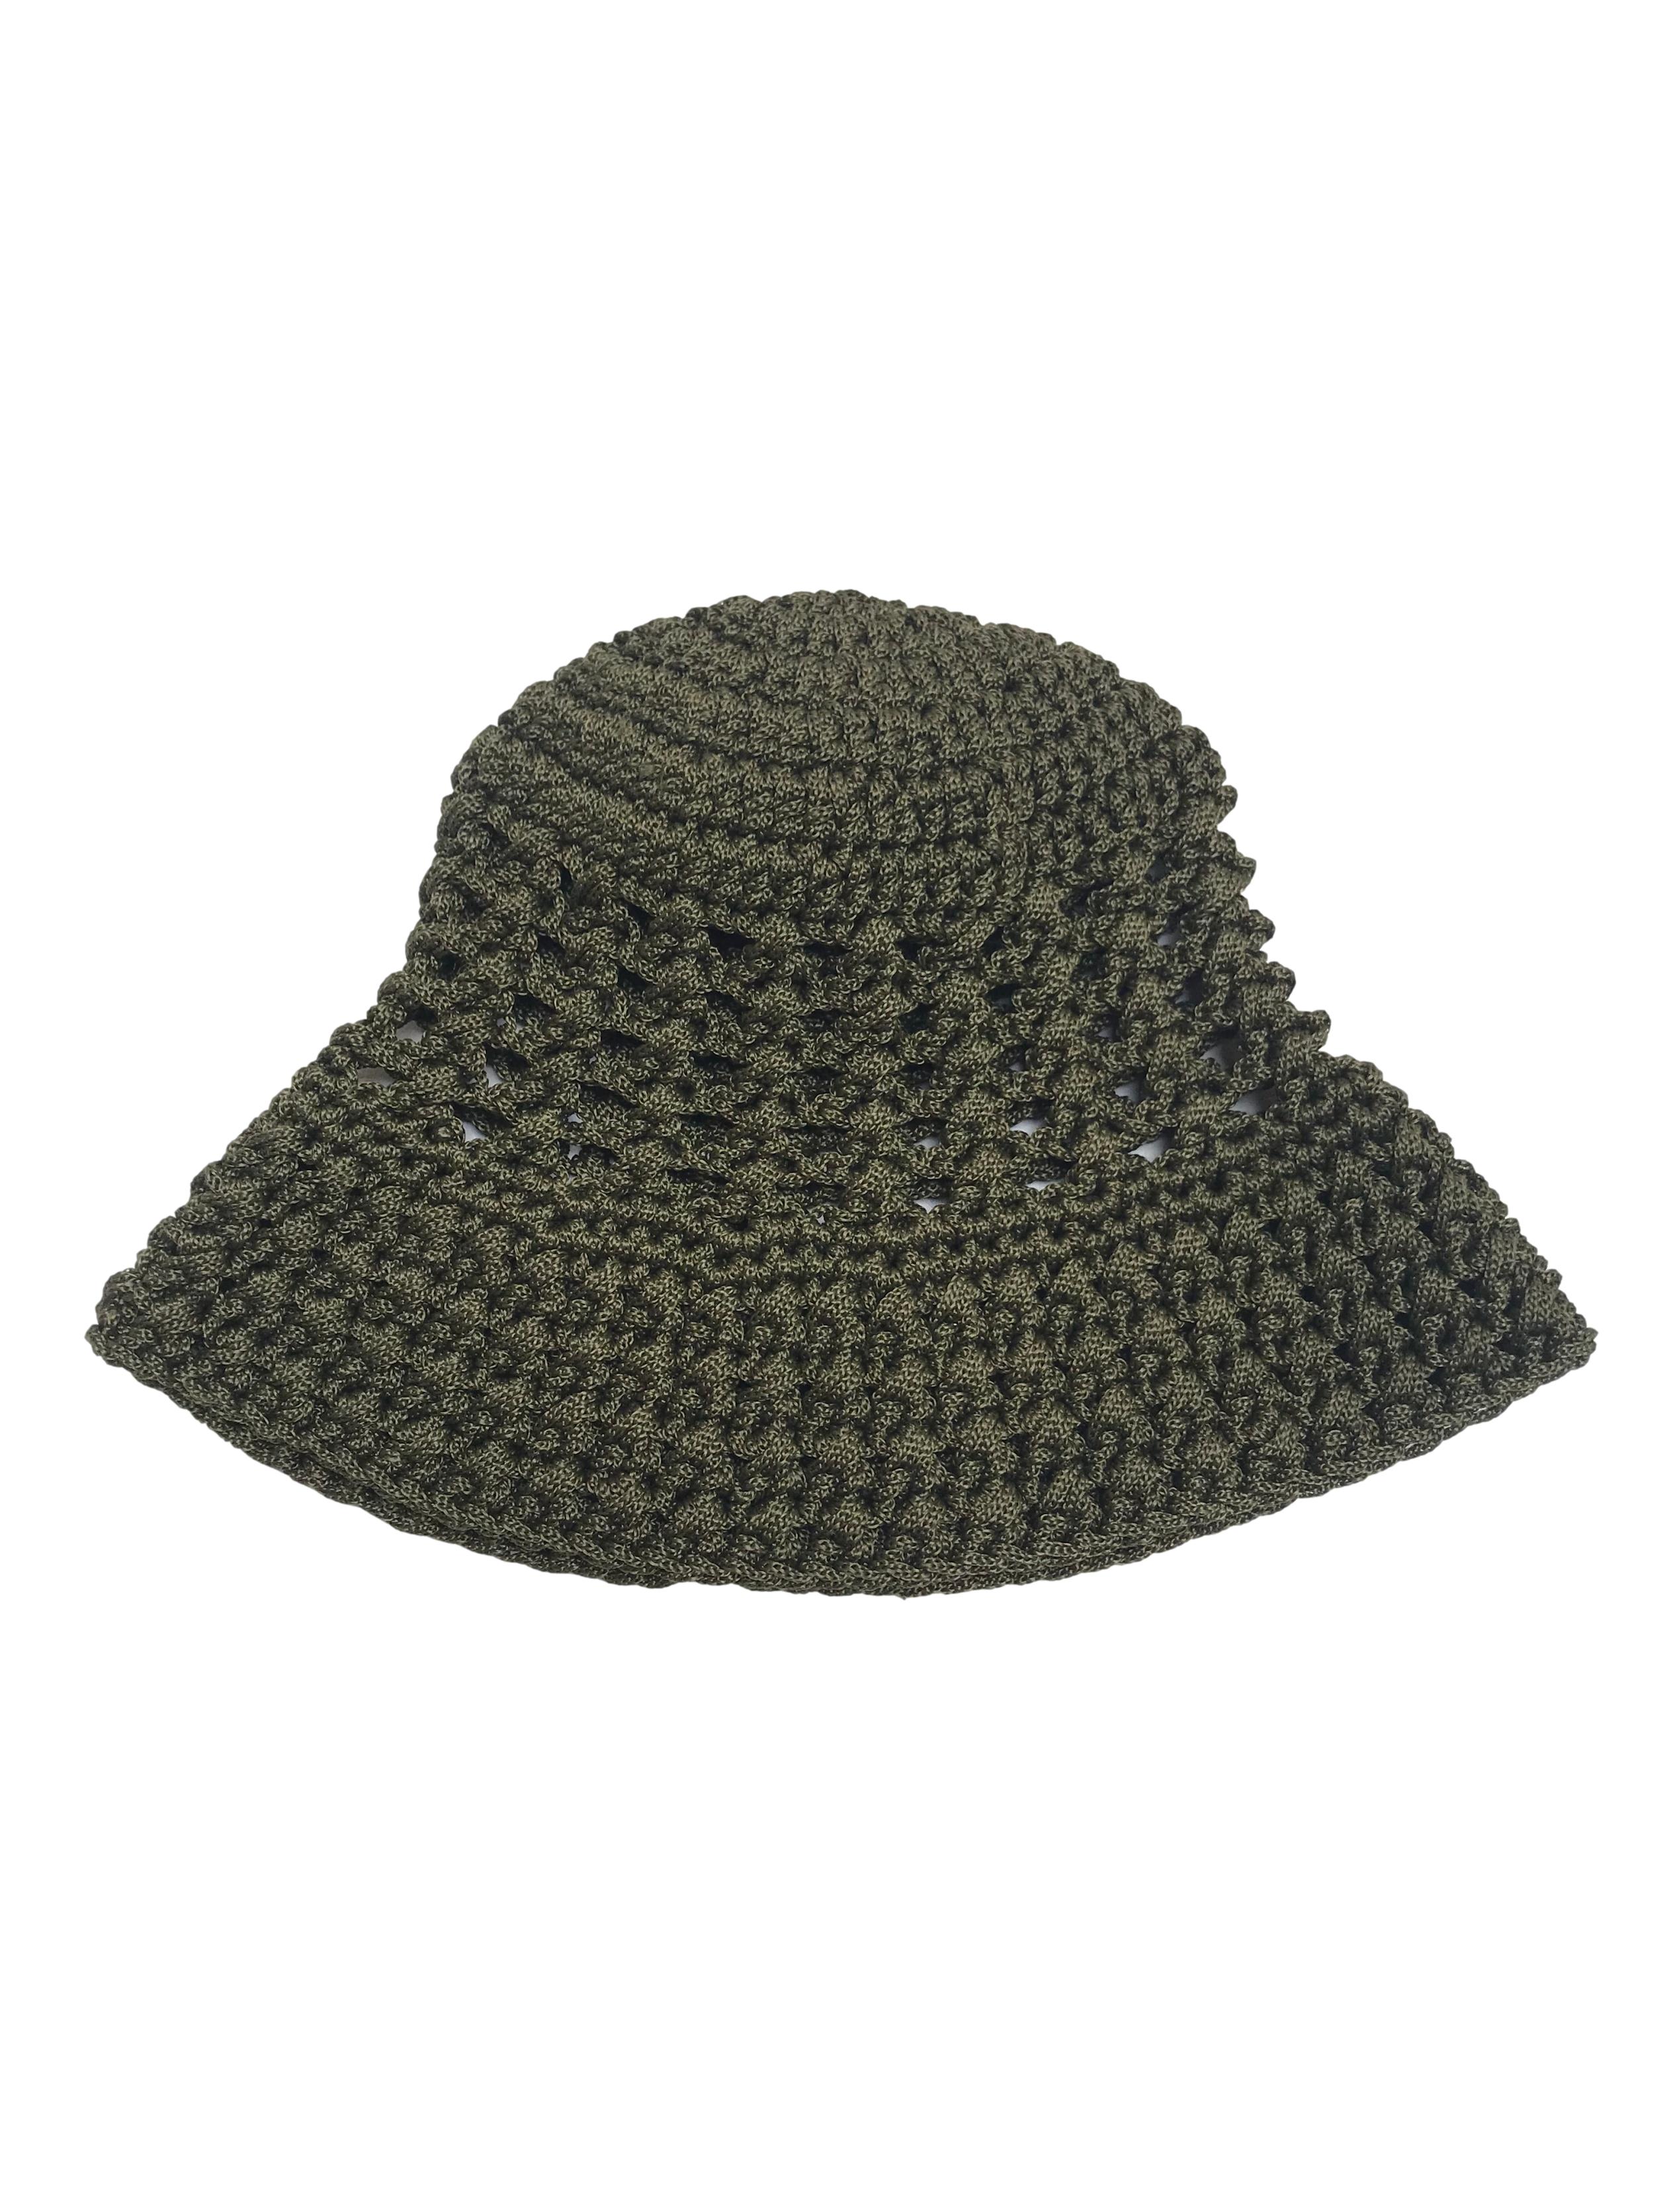 Gorro estilo bucket hat verde tejido a crochet